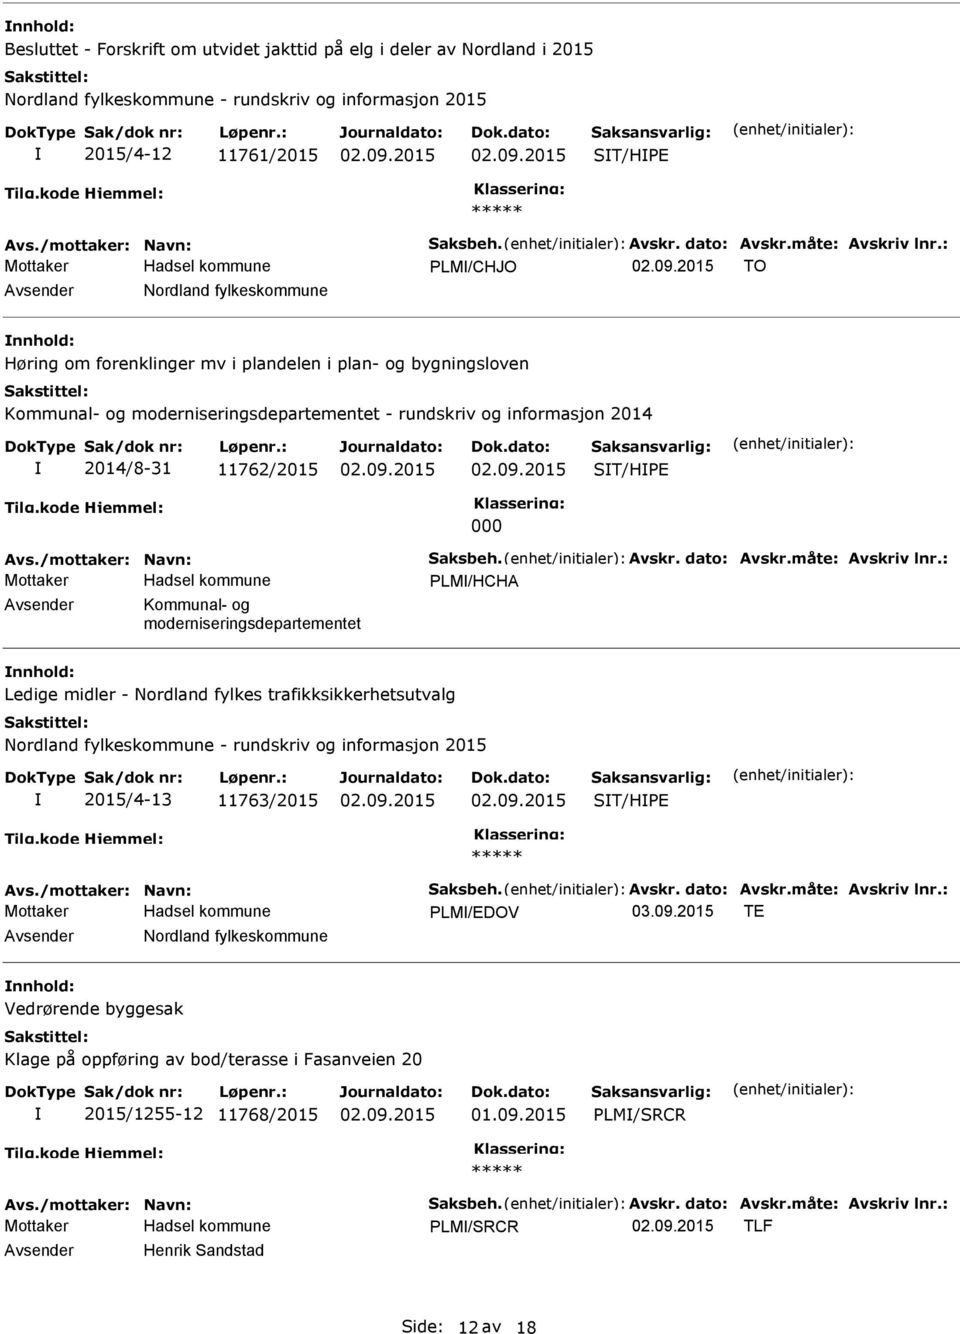 PLM/HCHA Kommunal- og moderniseringsdepartementet Ledige midler - Nordland fylkes trafikksikkerhetsutvalg Nordland fylkeskommune - rundskriv og informasjon 2015 2015/4-13 11763/2015 ST/HPE